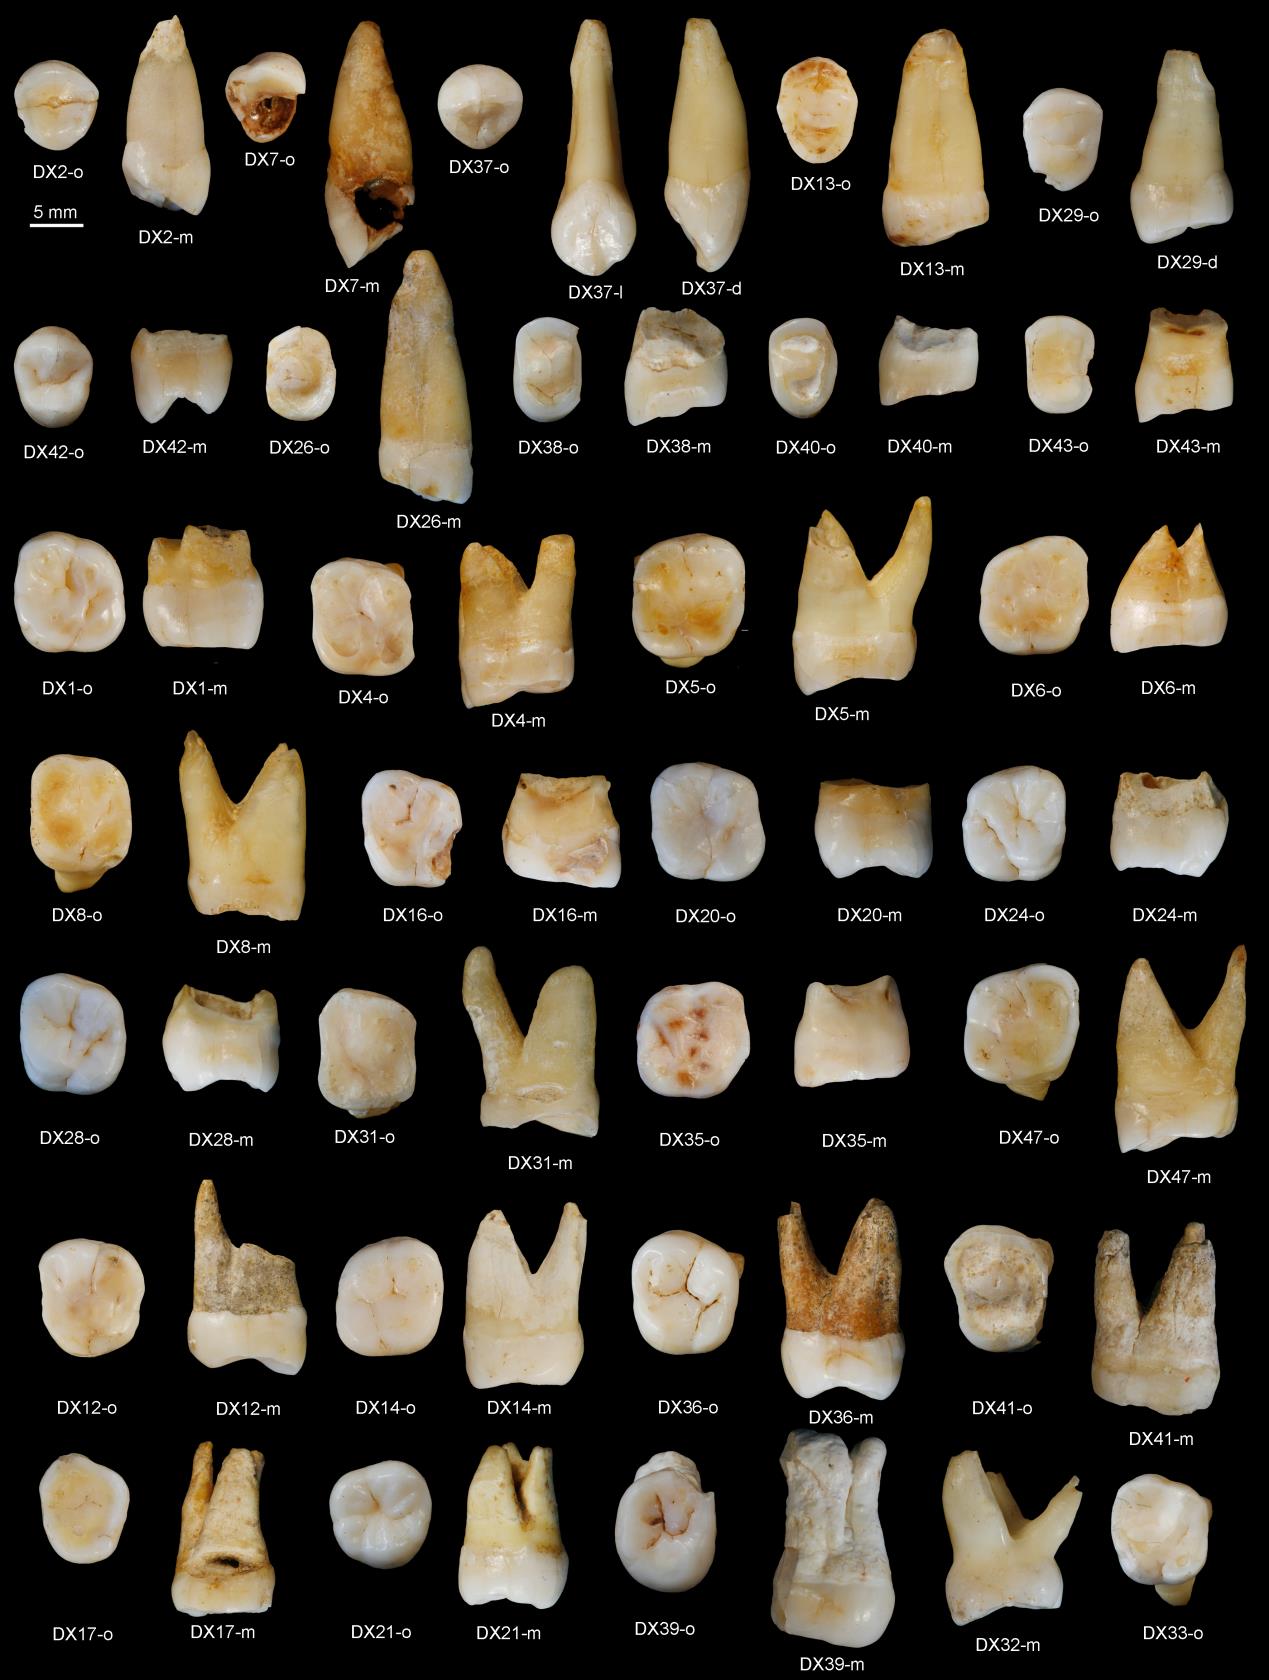 Tiến sỹ maria martinon-Torres tại một khu vực phát hiện răng người homo sapiens. Ảnh: Investigacionyciencia